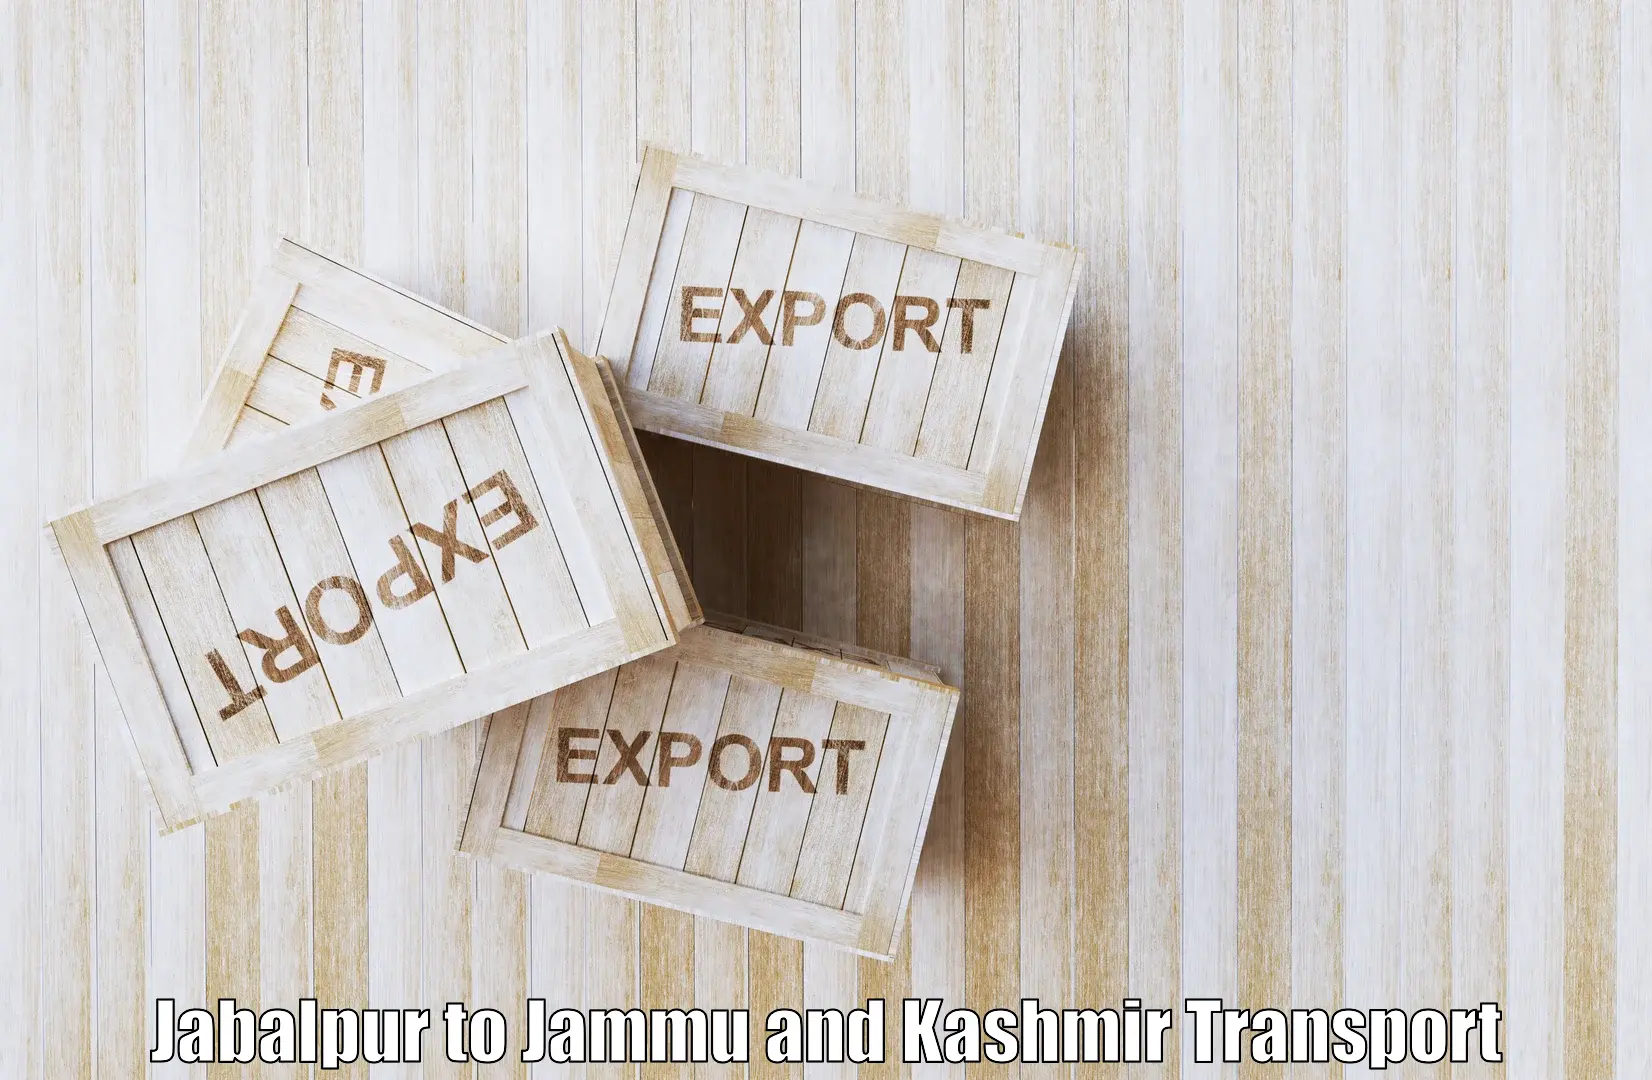 Online transport booking Jabalpur to Bandipur